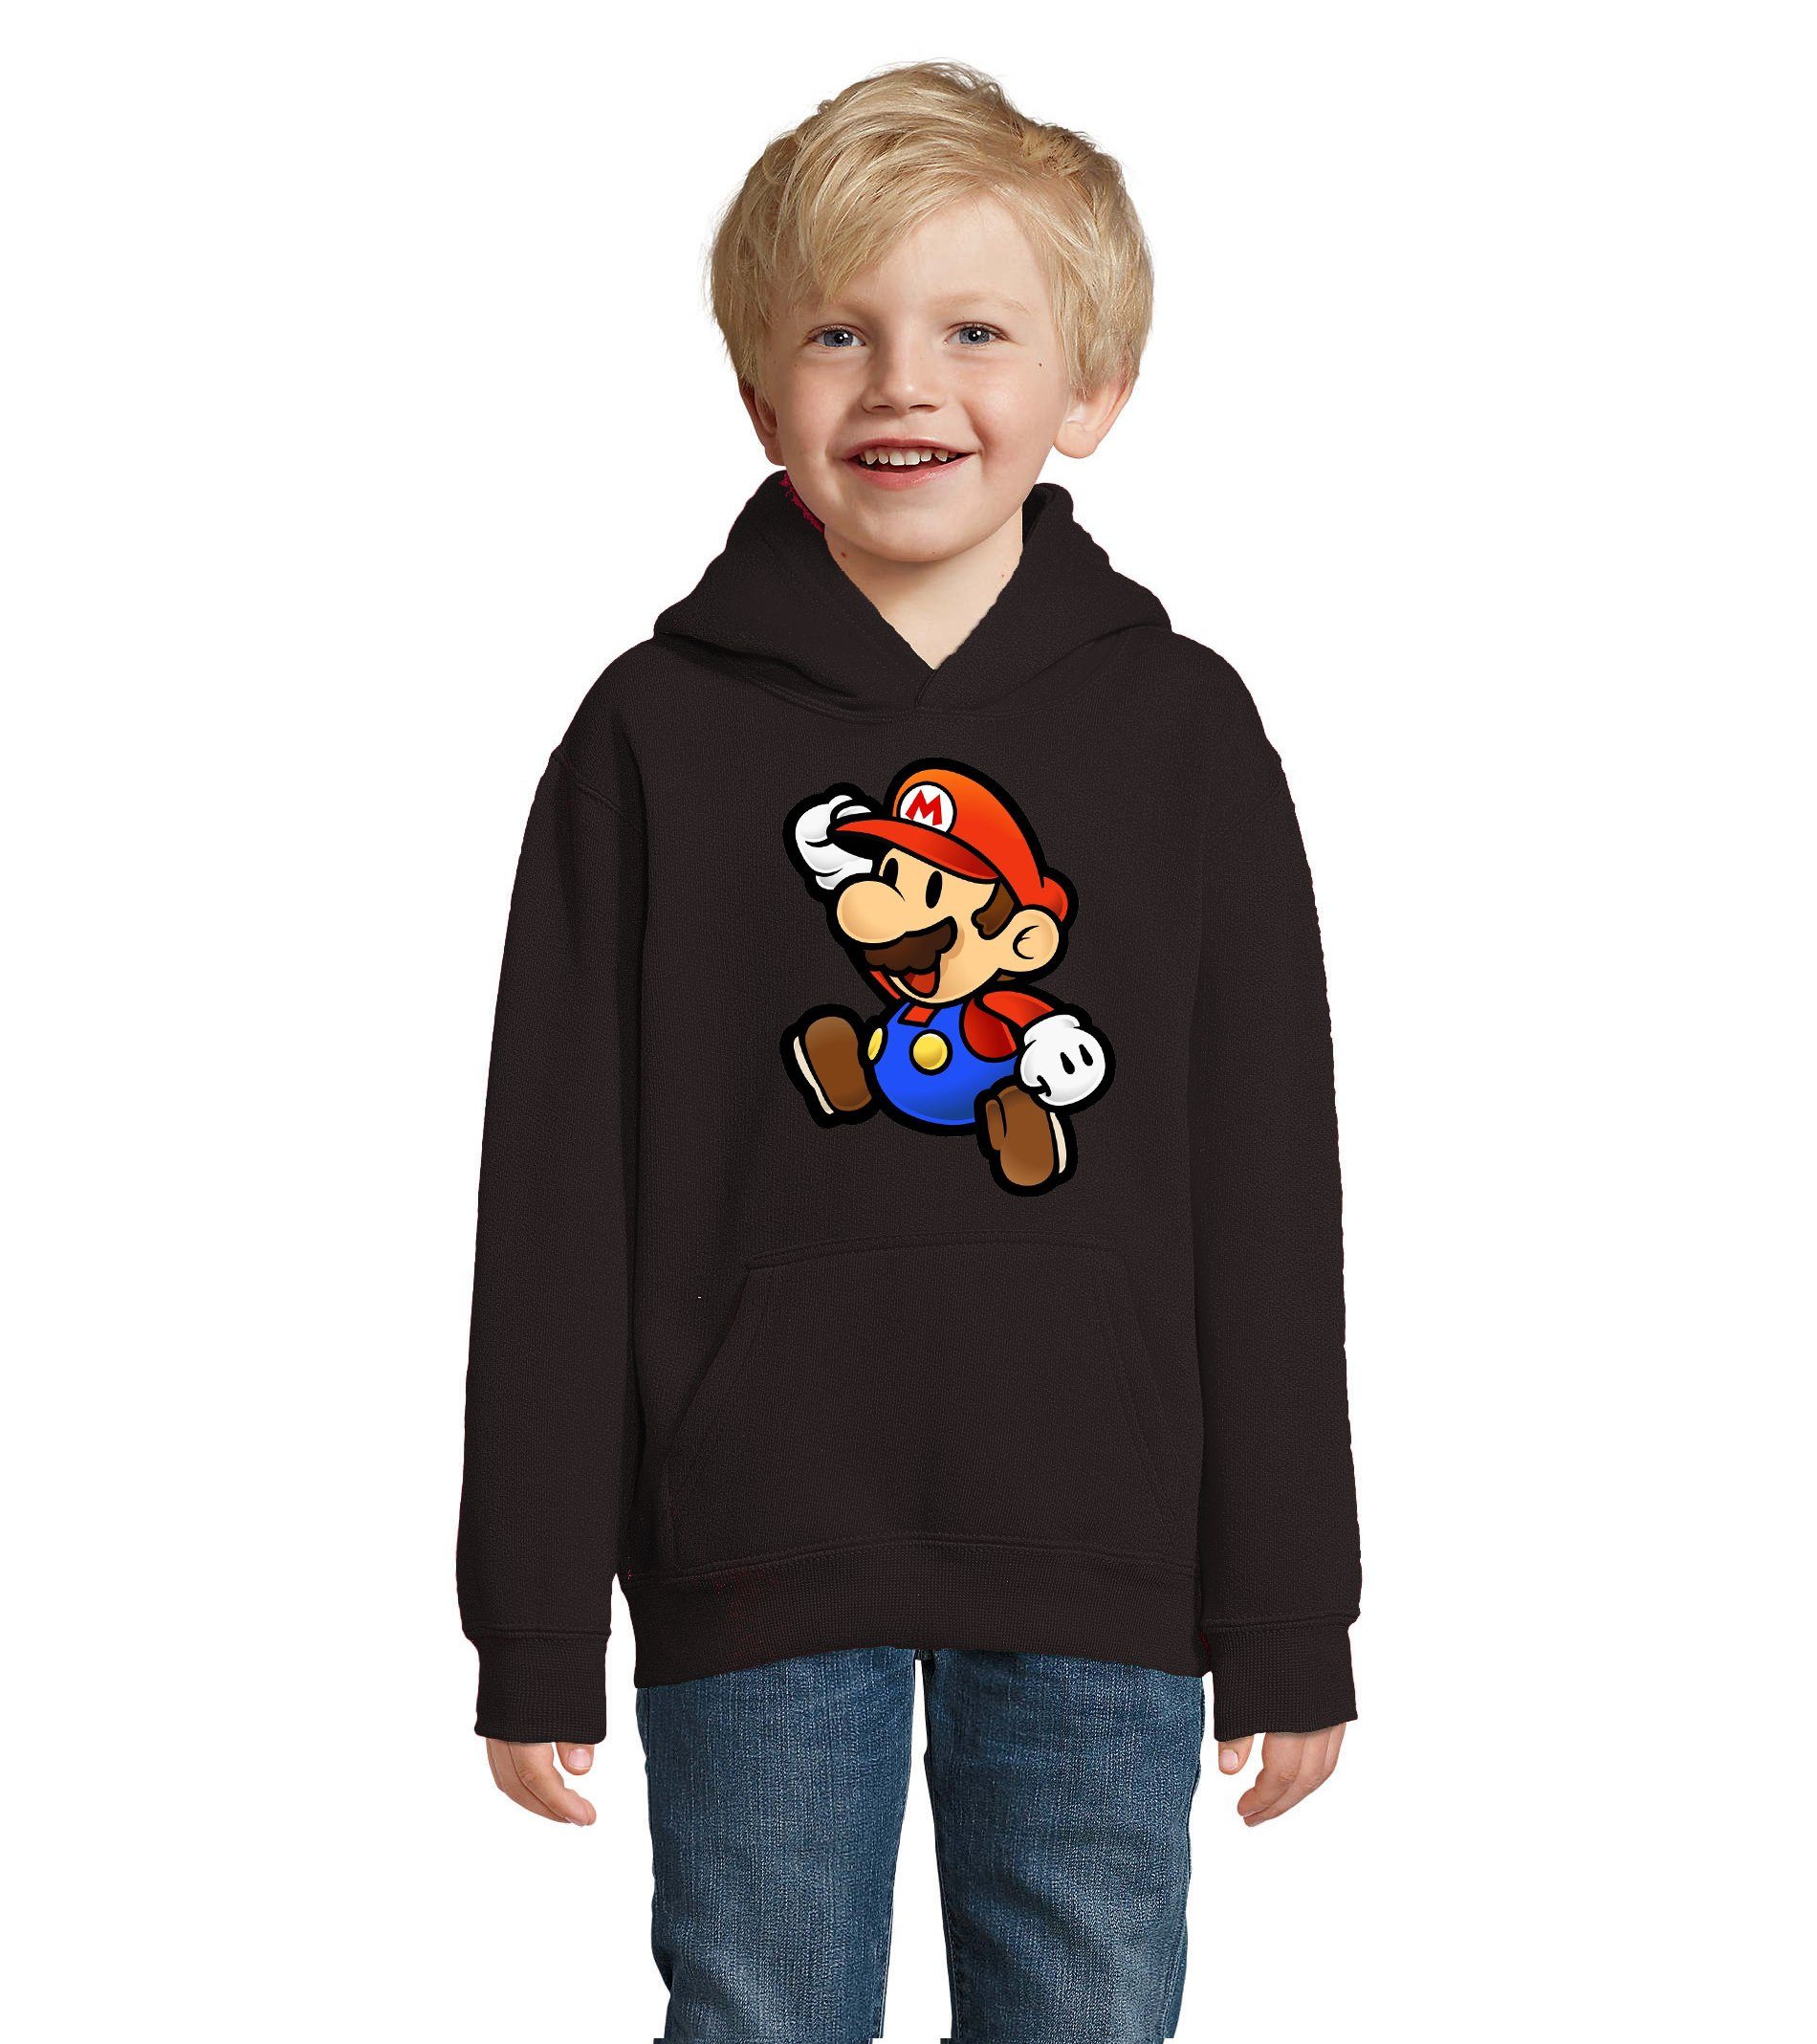 Blondie & Brownie Hoodie Kinder Jungen & Mädchen Mario Nintendo Gaming Luigi Yoshi Super mit Kapuze Schwarz